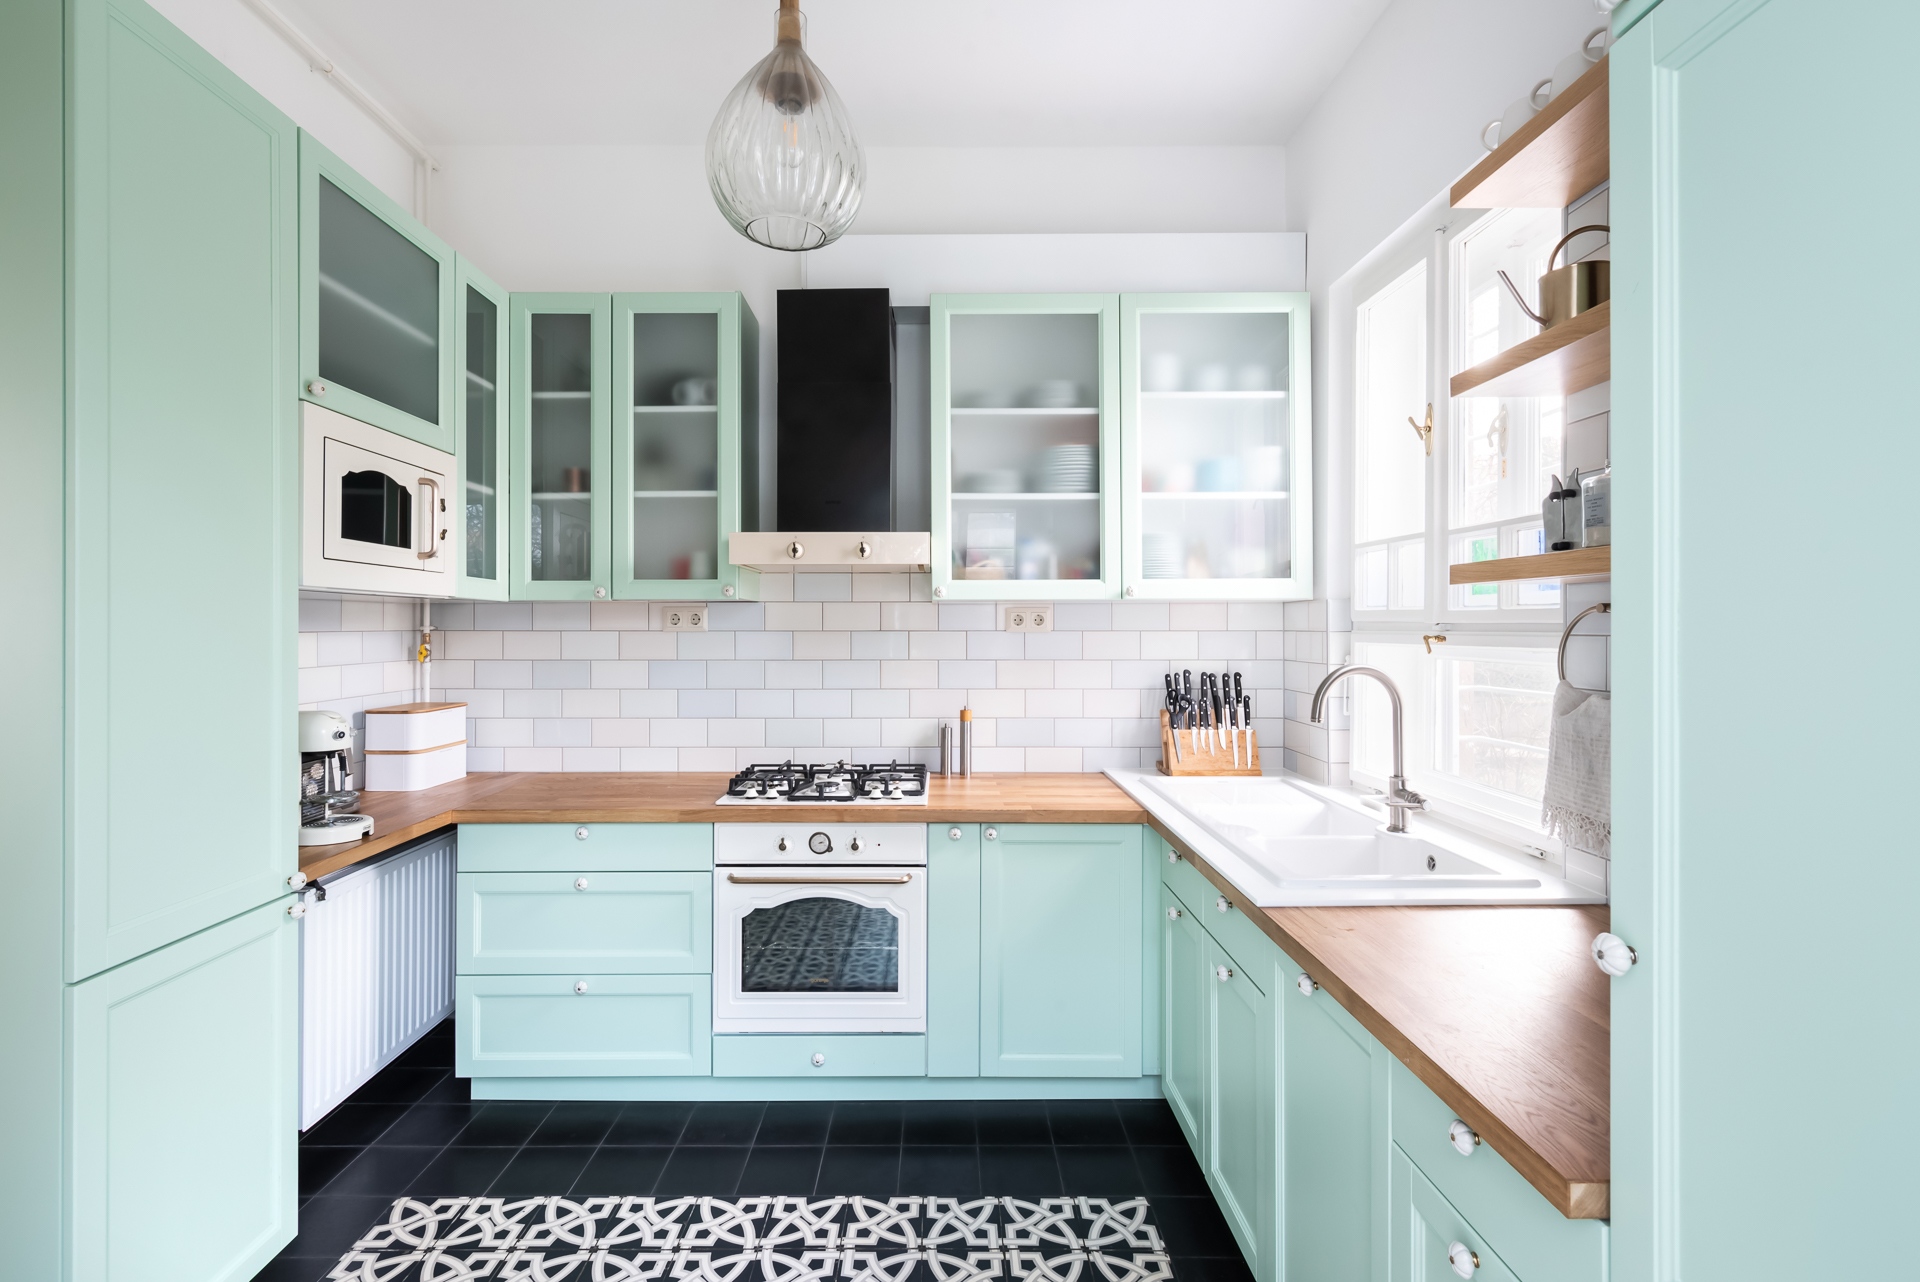 Az eredeti, megőrzött cementpadlóhoz üde zöldes színű, egyedi konyhabútor készült, amihez fehér, rusztikus stílusú konyhai gépeket választottak.